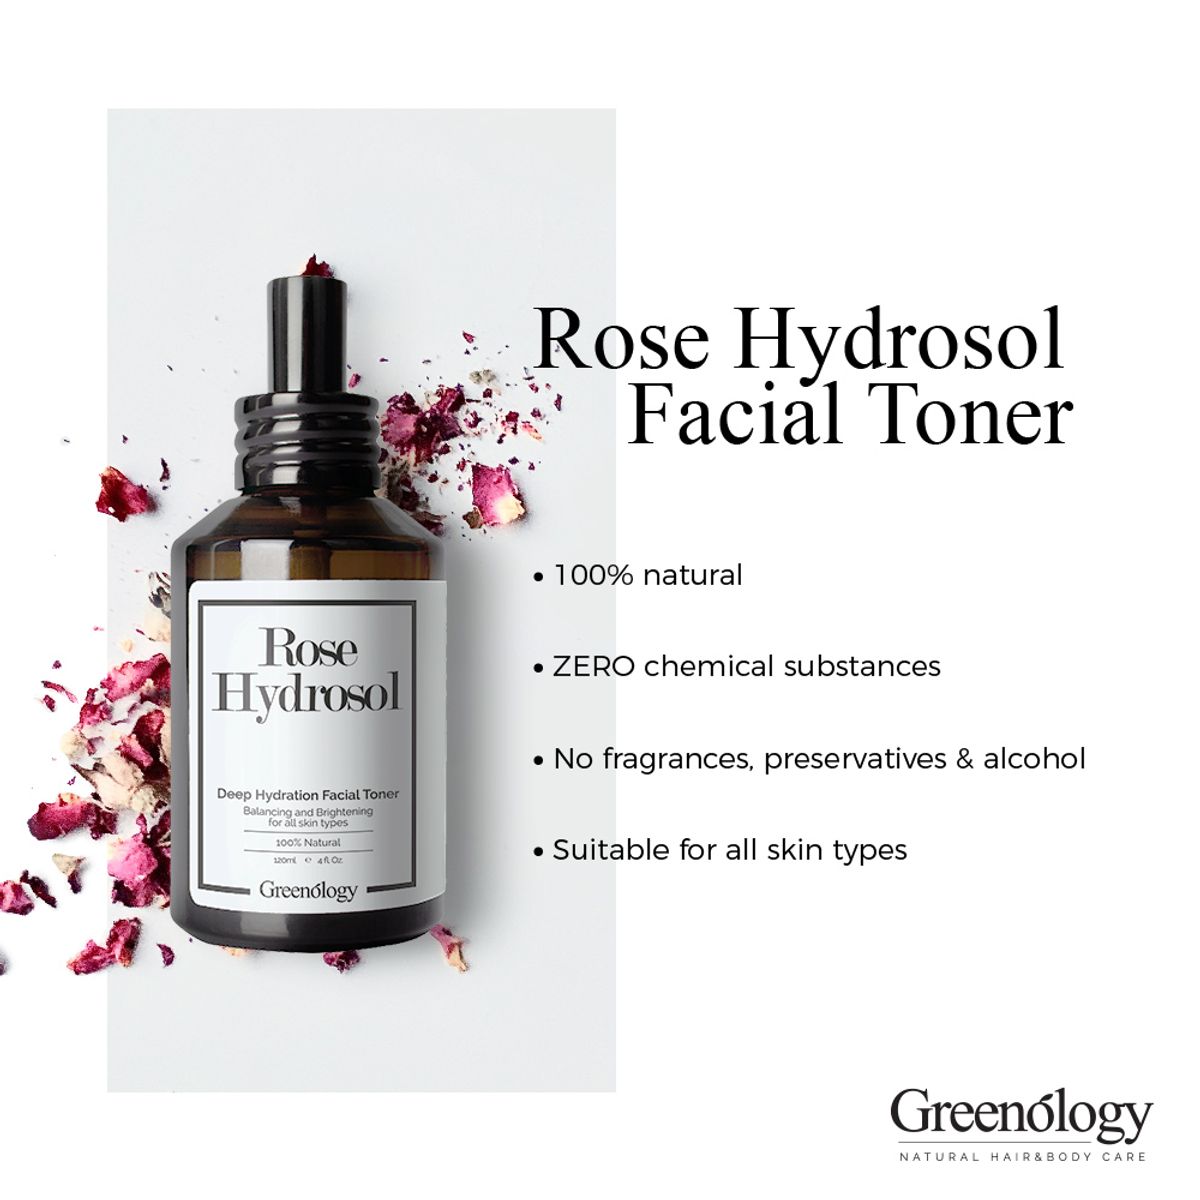 Rose Hydrosol Facial Toner